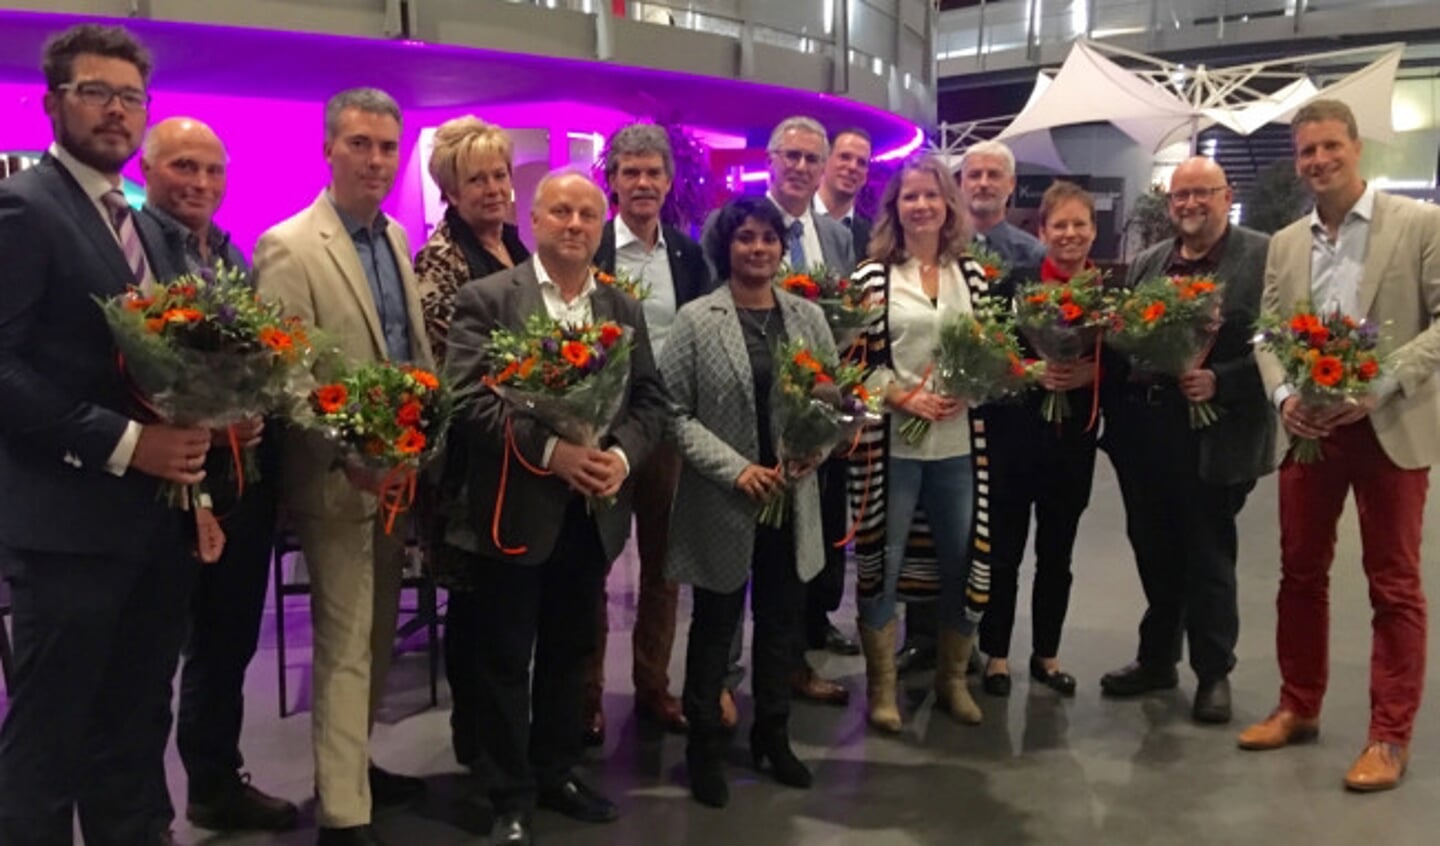  De veertien kandidaten van de VVD